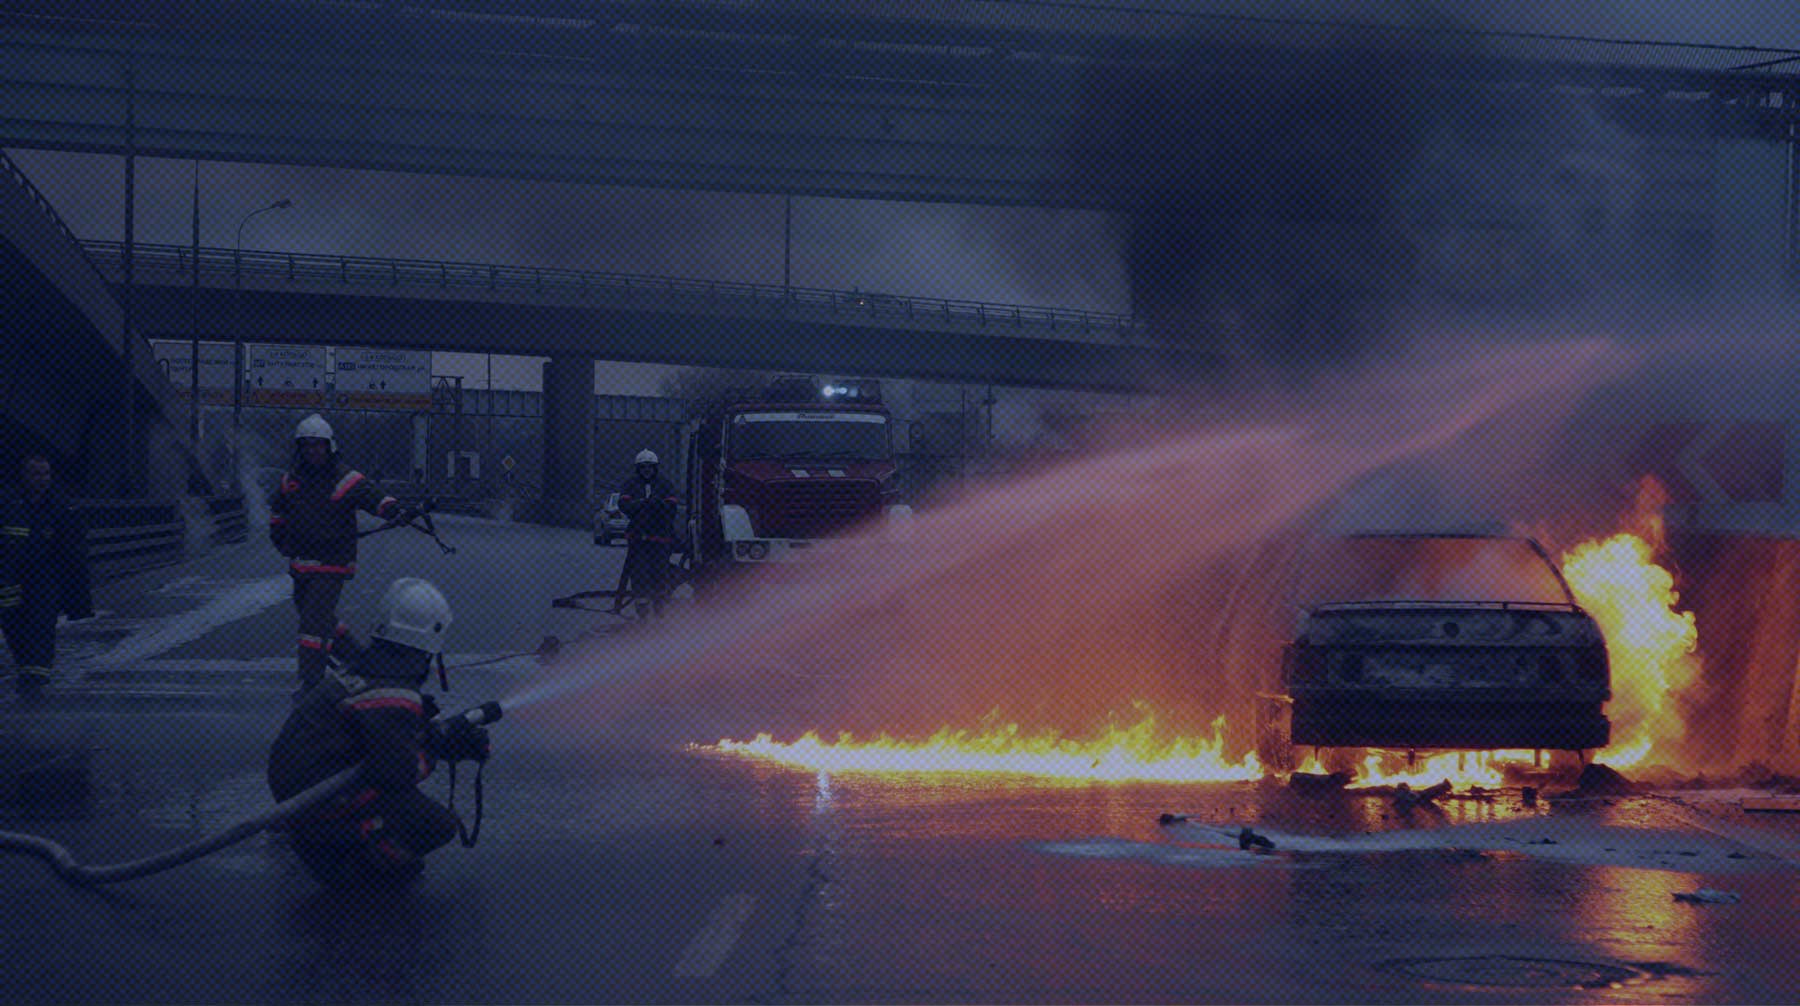 Dailystorm - Сгоревшие машины силовиков и отставка правительства. Что происходит в Казахстане